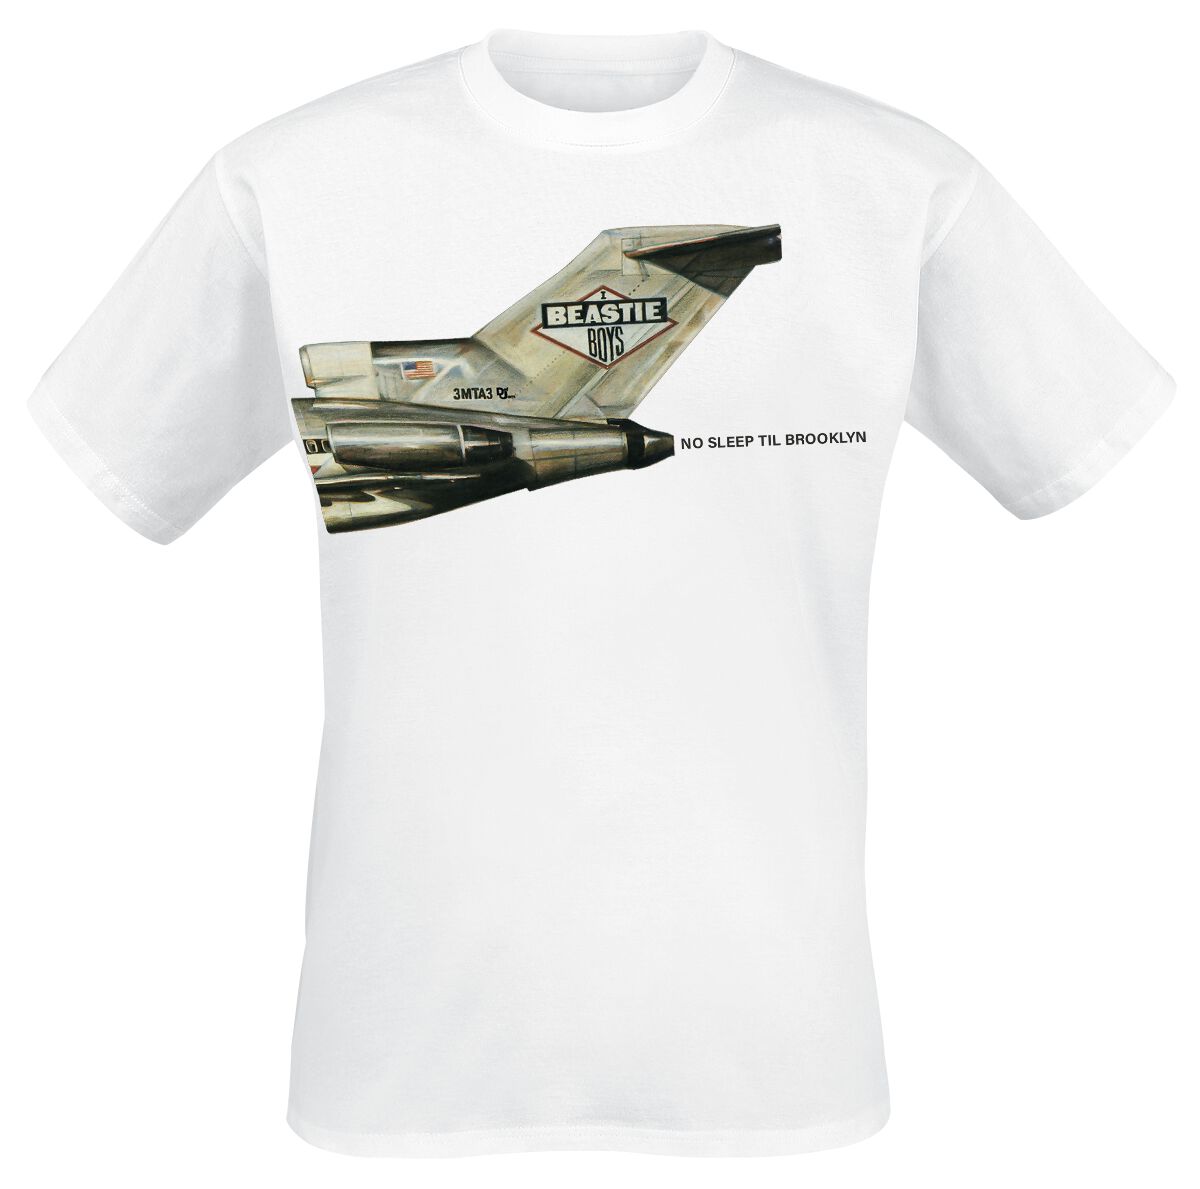 Beastie Boys T-Shirt - No Sleep Til Brooklyn Plane - S bis 3XL - für Männer - Größe M - weiß  - Lizenziertes Merchandise!